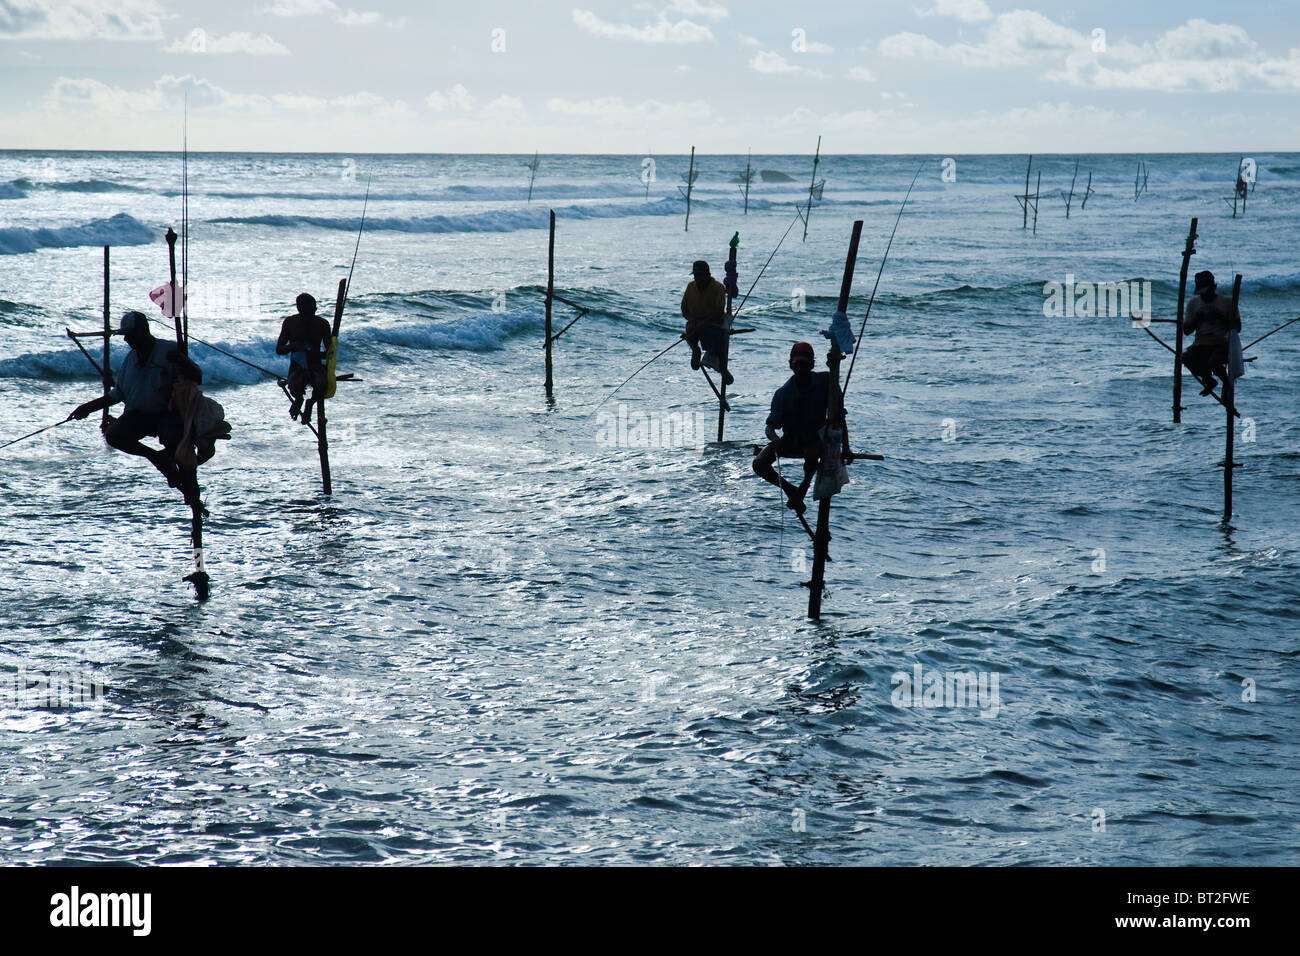 Pêche La pêche est sur pilotis dans l'eau peu profonde sur une plate-forme composée d'un échassier est une méthode couramment utilisée par les pêcheurs sri-lankais Banque D'Images